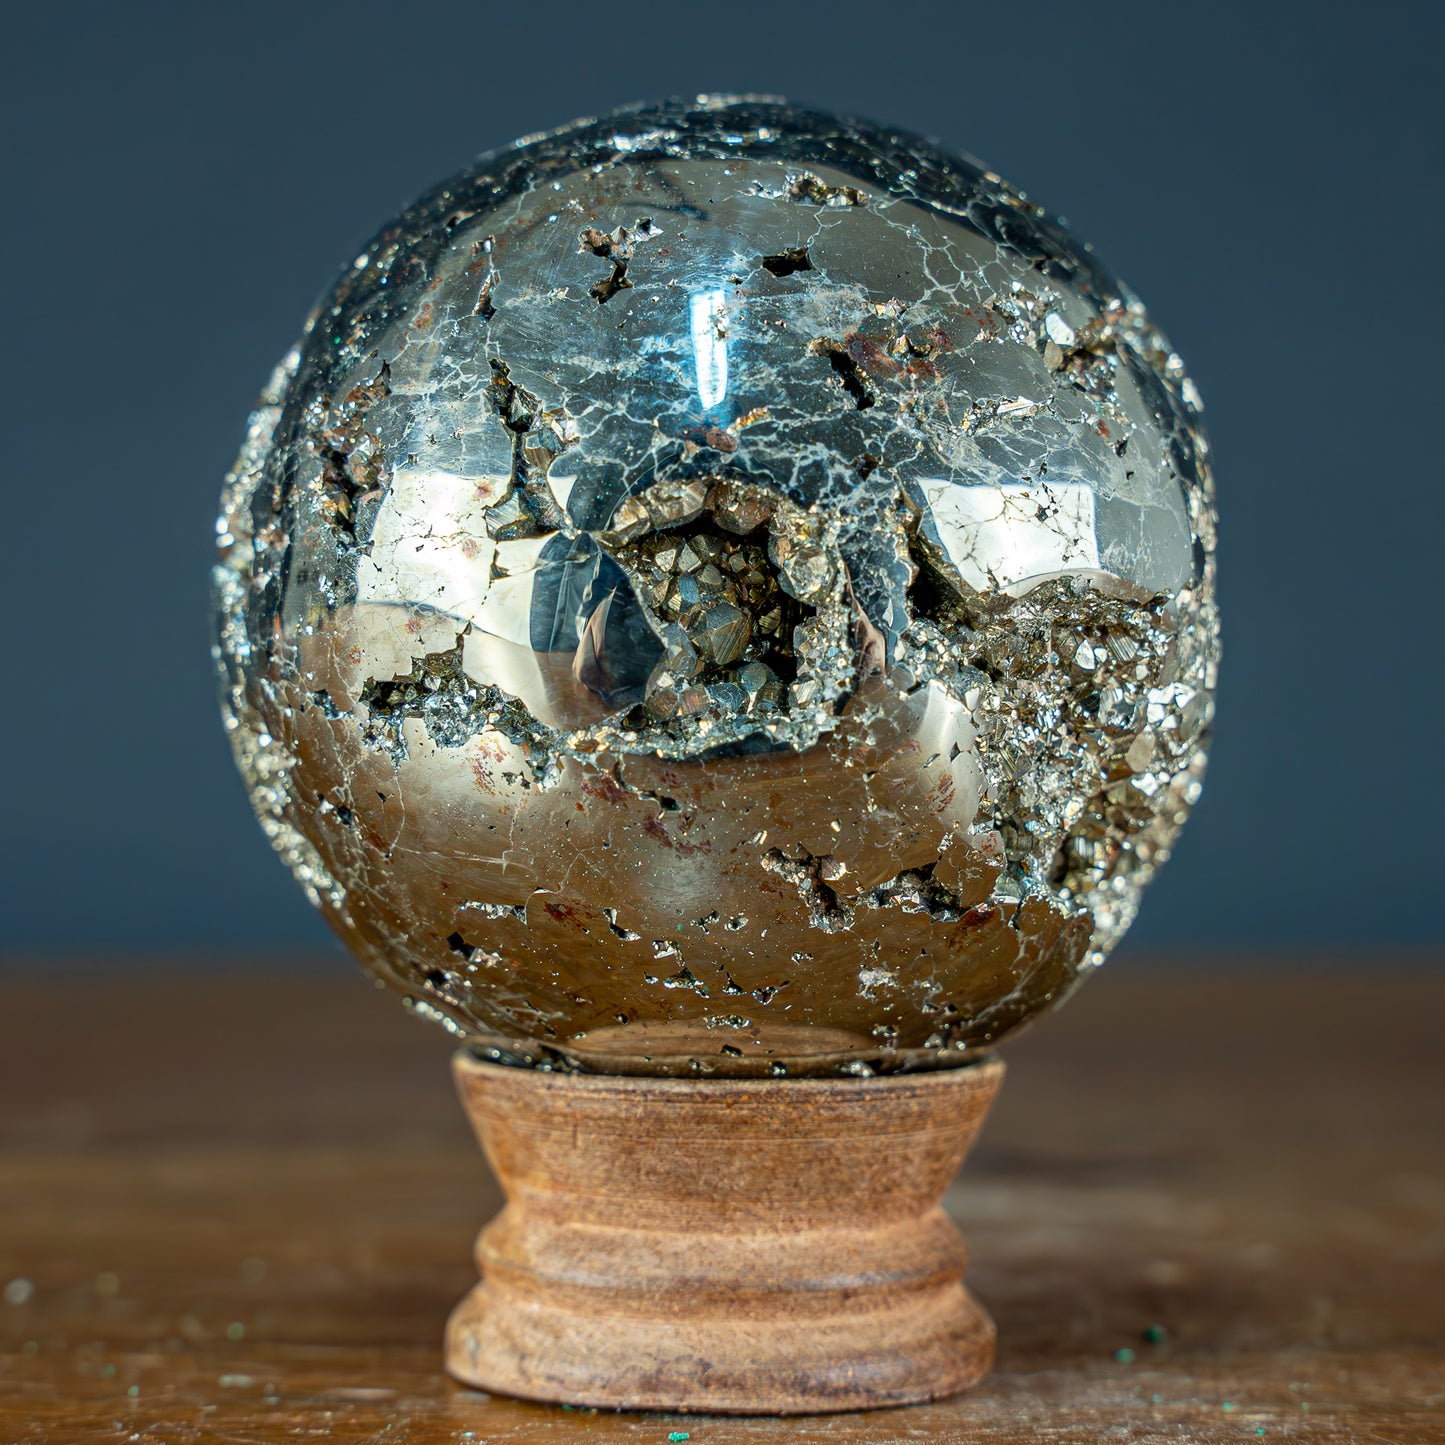 Natürliche Dekorative Pyrit Kugel / Druse - 1003,72g - 78mm